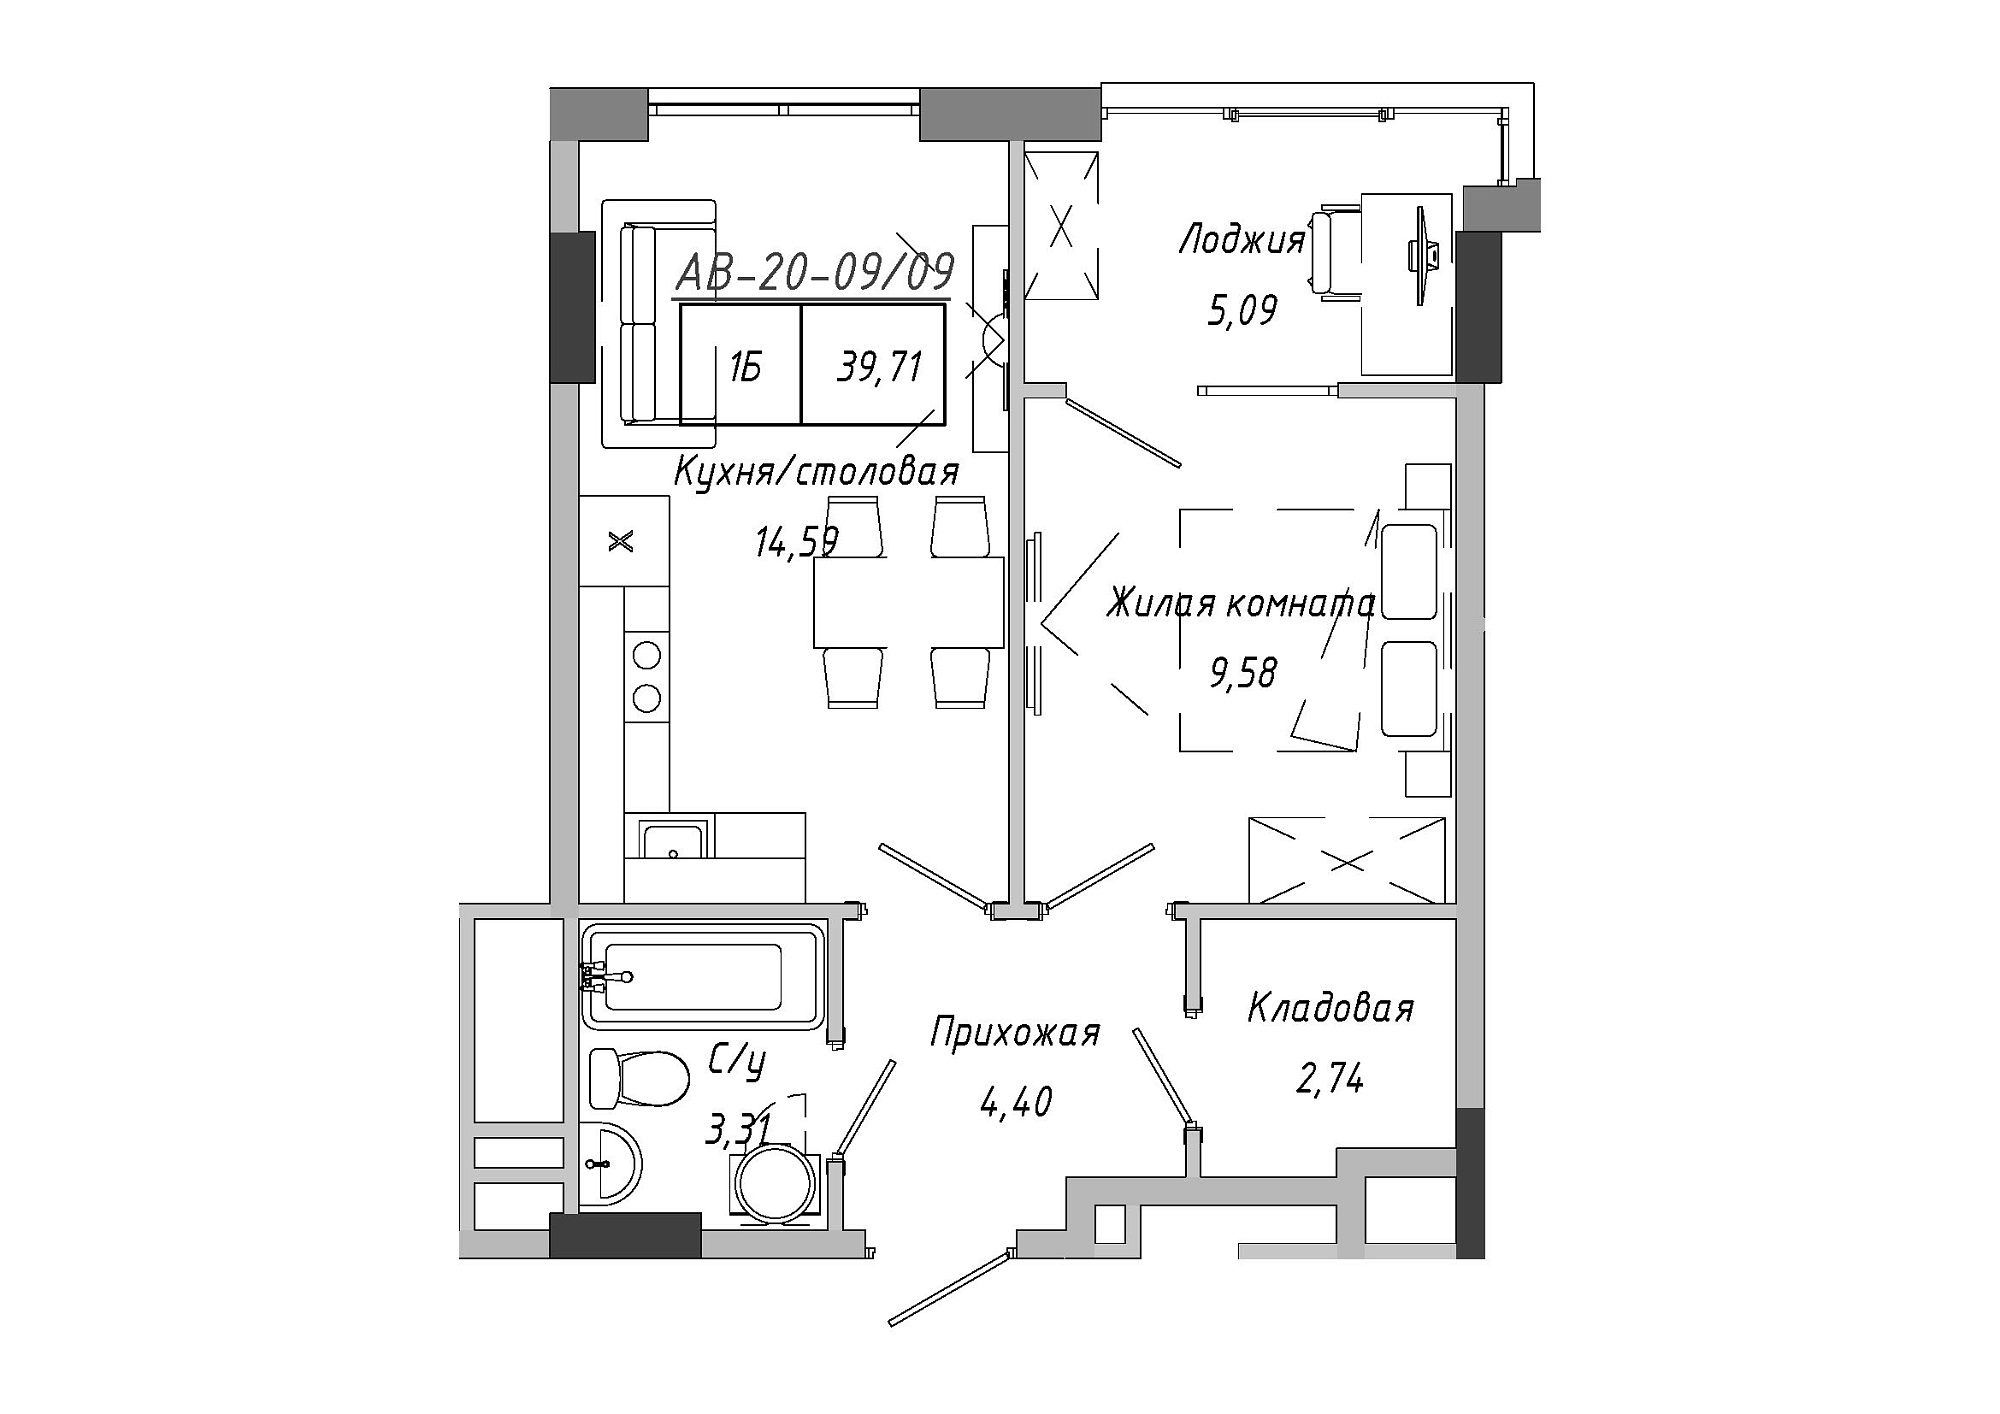 Планування 1-к квартира площею 37.59м2, AB-20-09/00009.